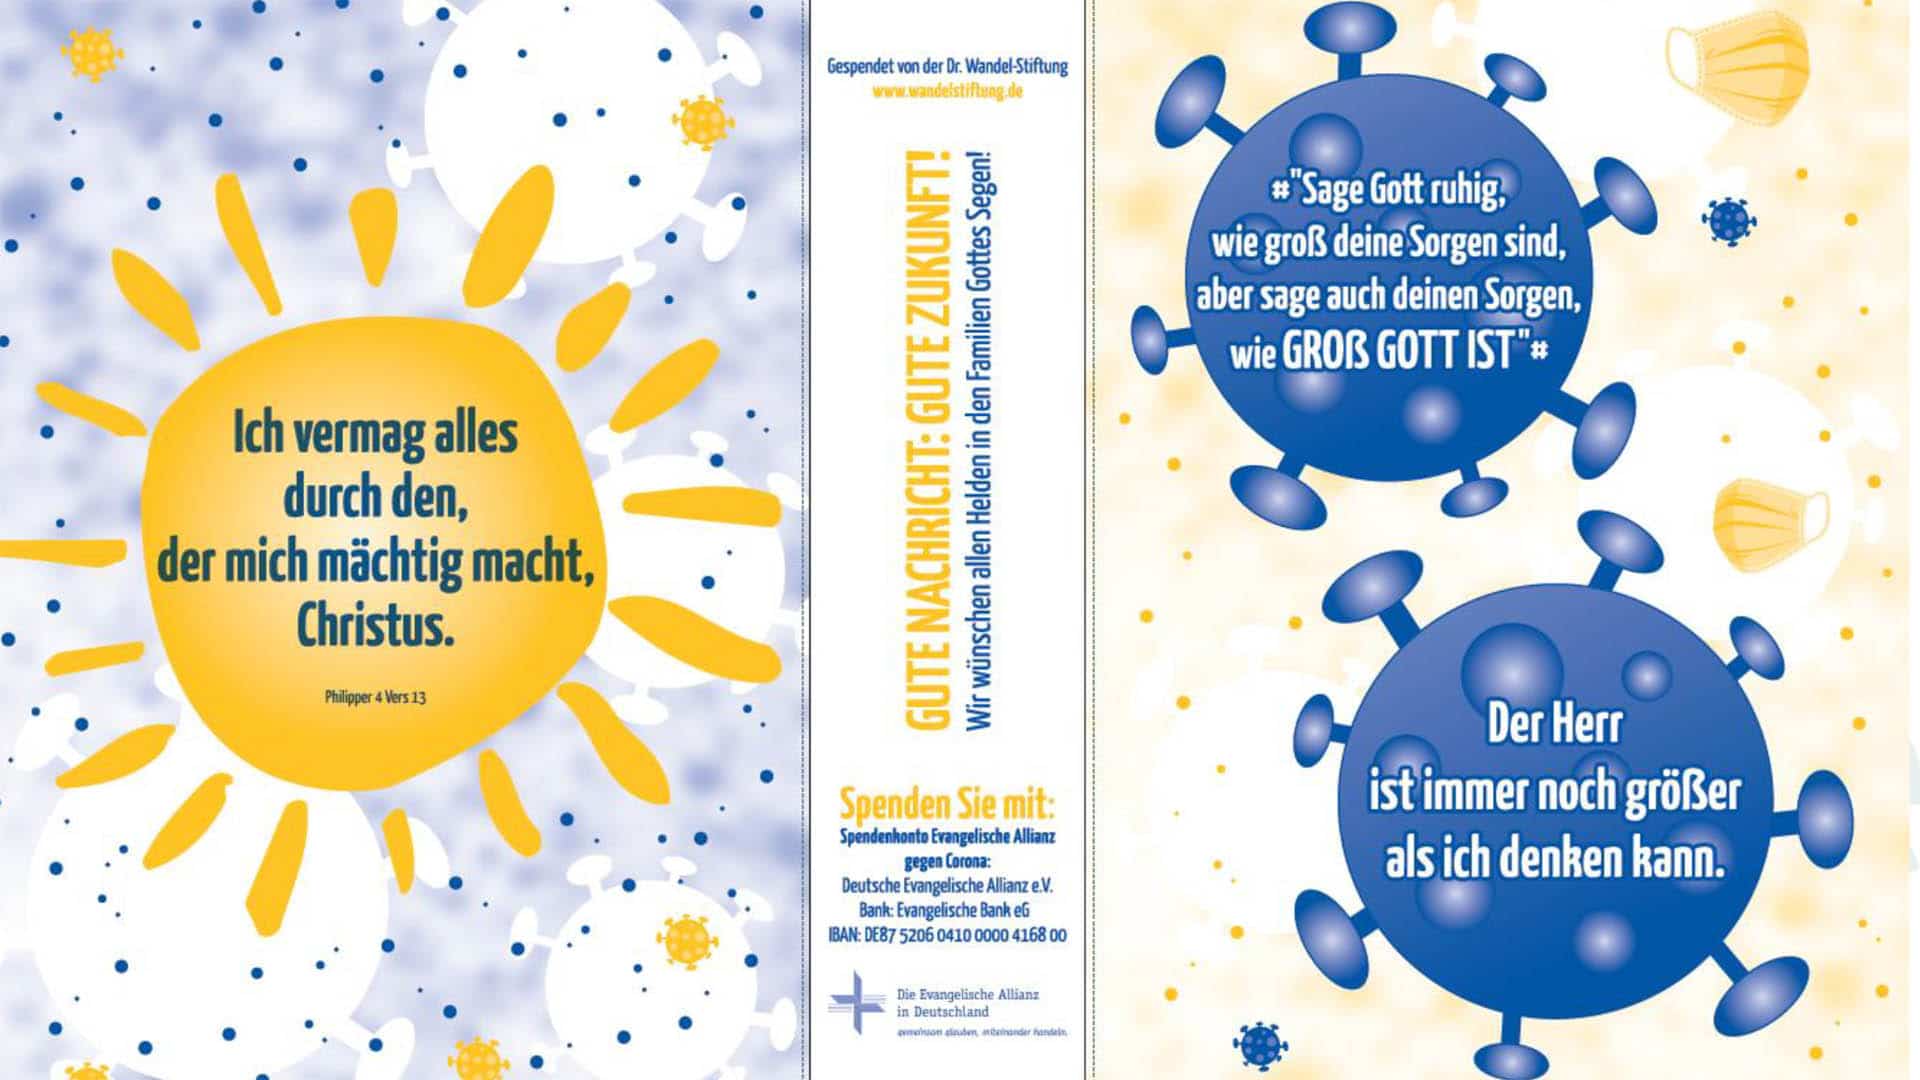 Die Evangelische Allianz in Deutschland (EAD) bietet Atemmasken mitsamt einem Bibelvers kostenlos an